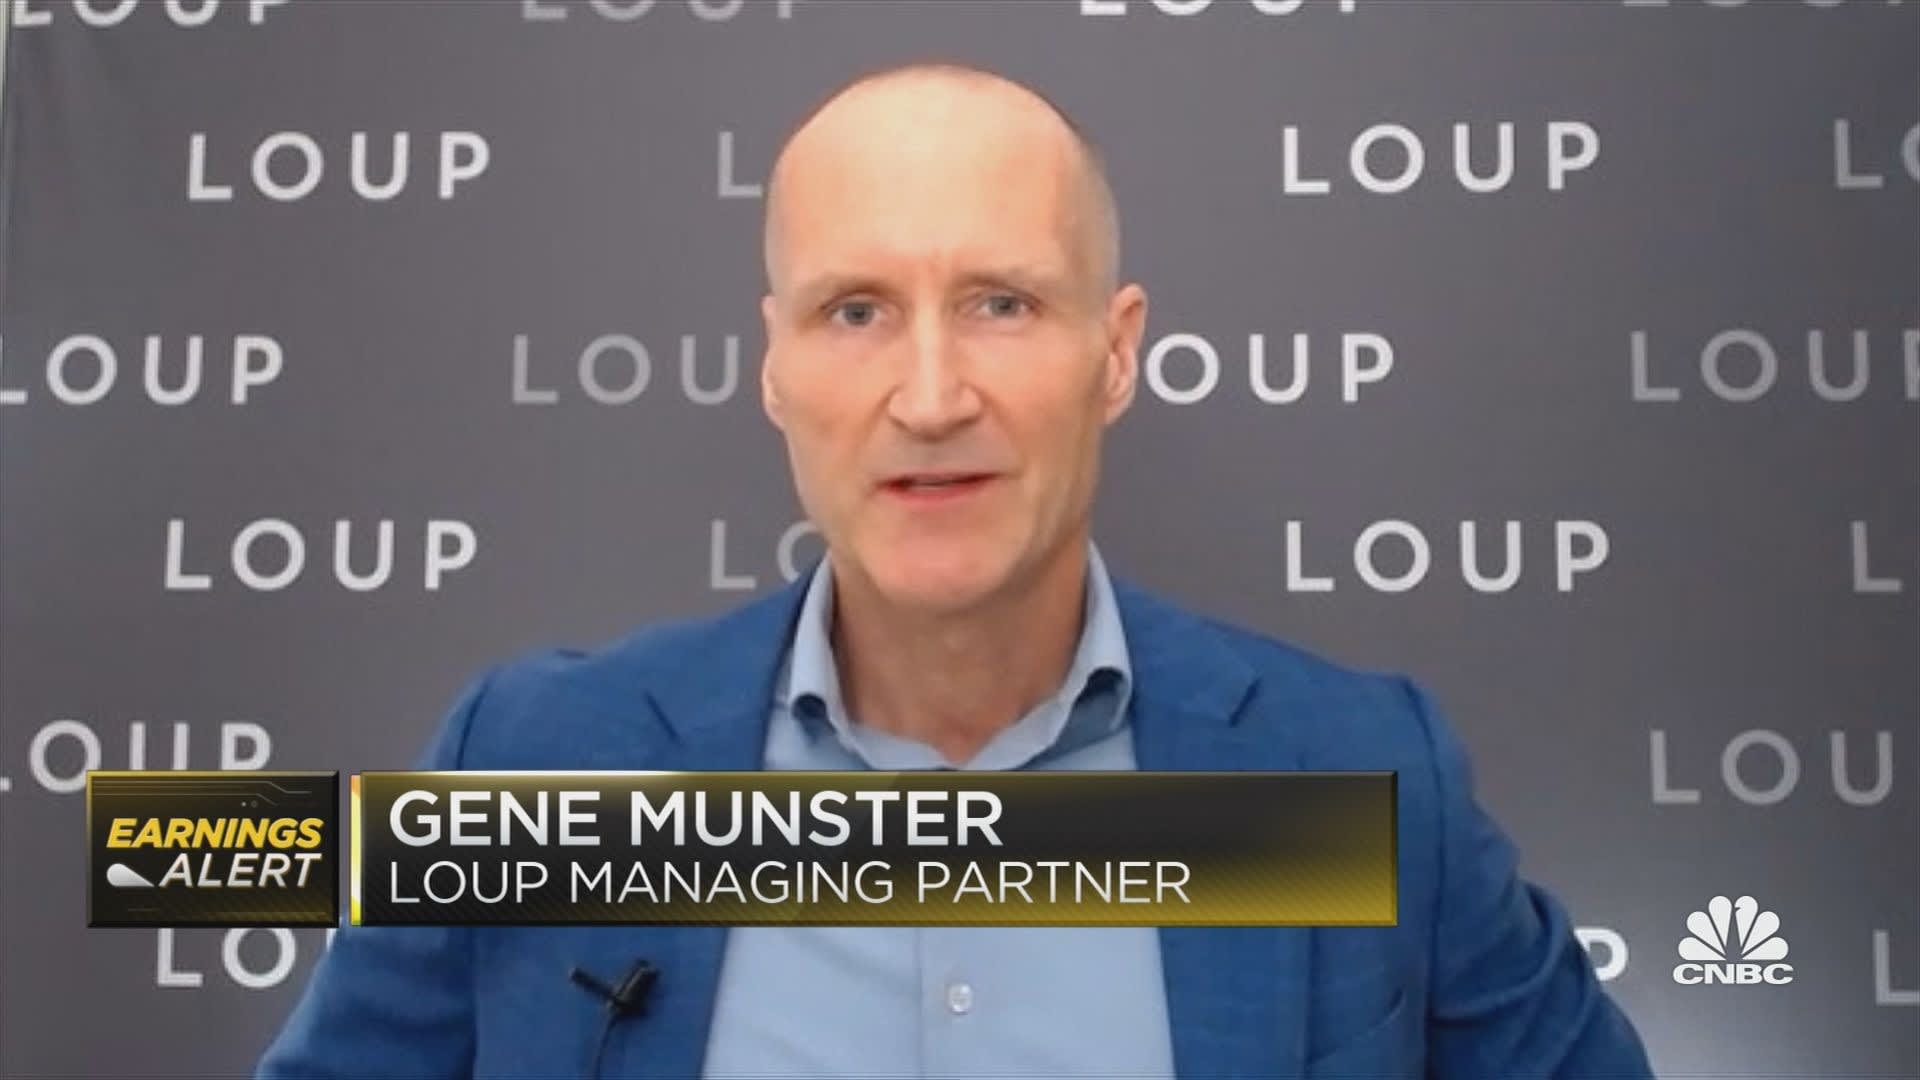 Loup'tan Gene Munster, bunun Amazon kazançlarına aşırı tepki gibi geldiğini söylüyor